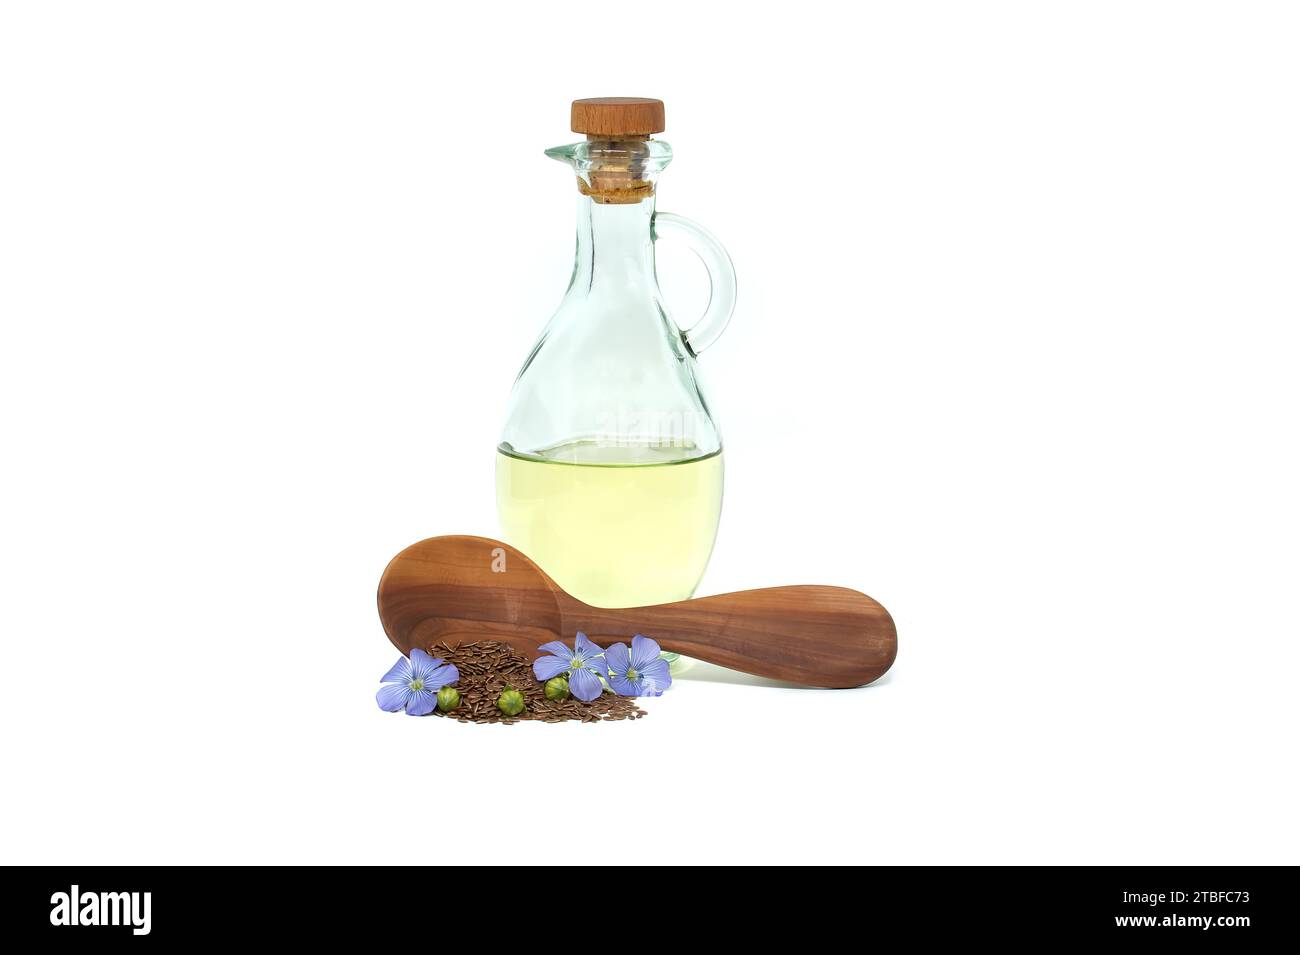 Holzlöffel gefüllt mit kleinen braunen Leinsamen und einer blauen Leinpflanze blüht neben Leinöl in Glasdekanter isoliert auf weißem Hintergrund Stockfoto